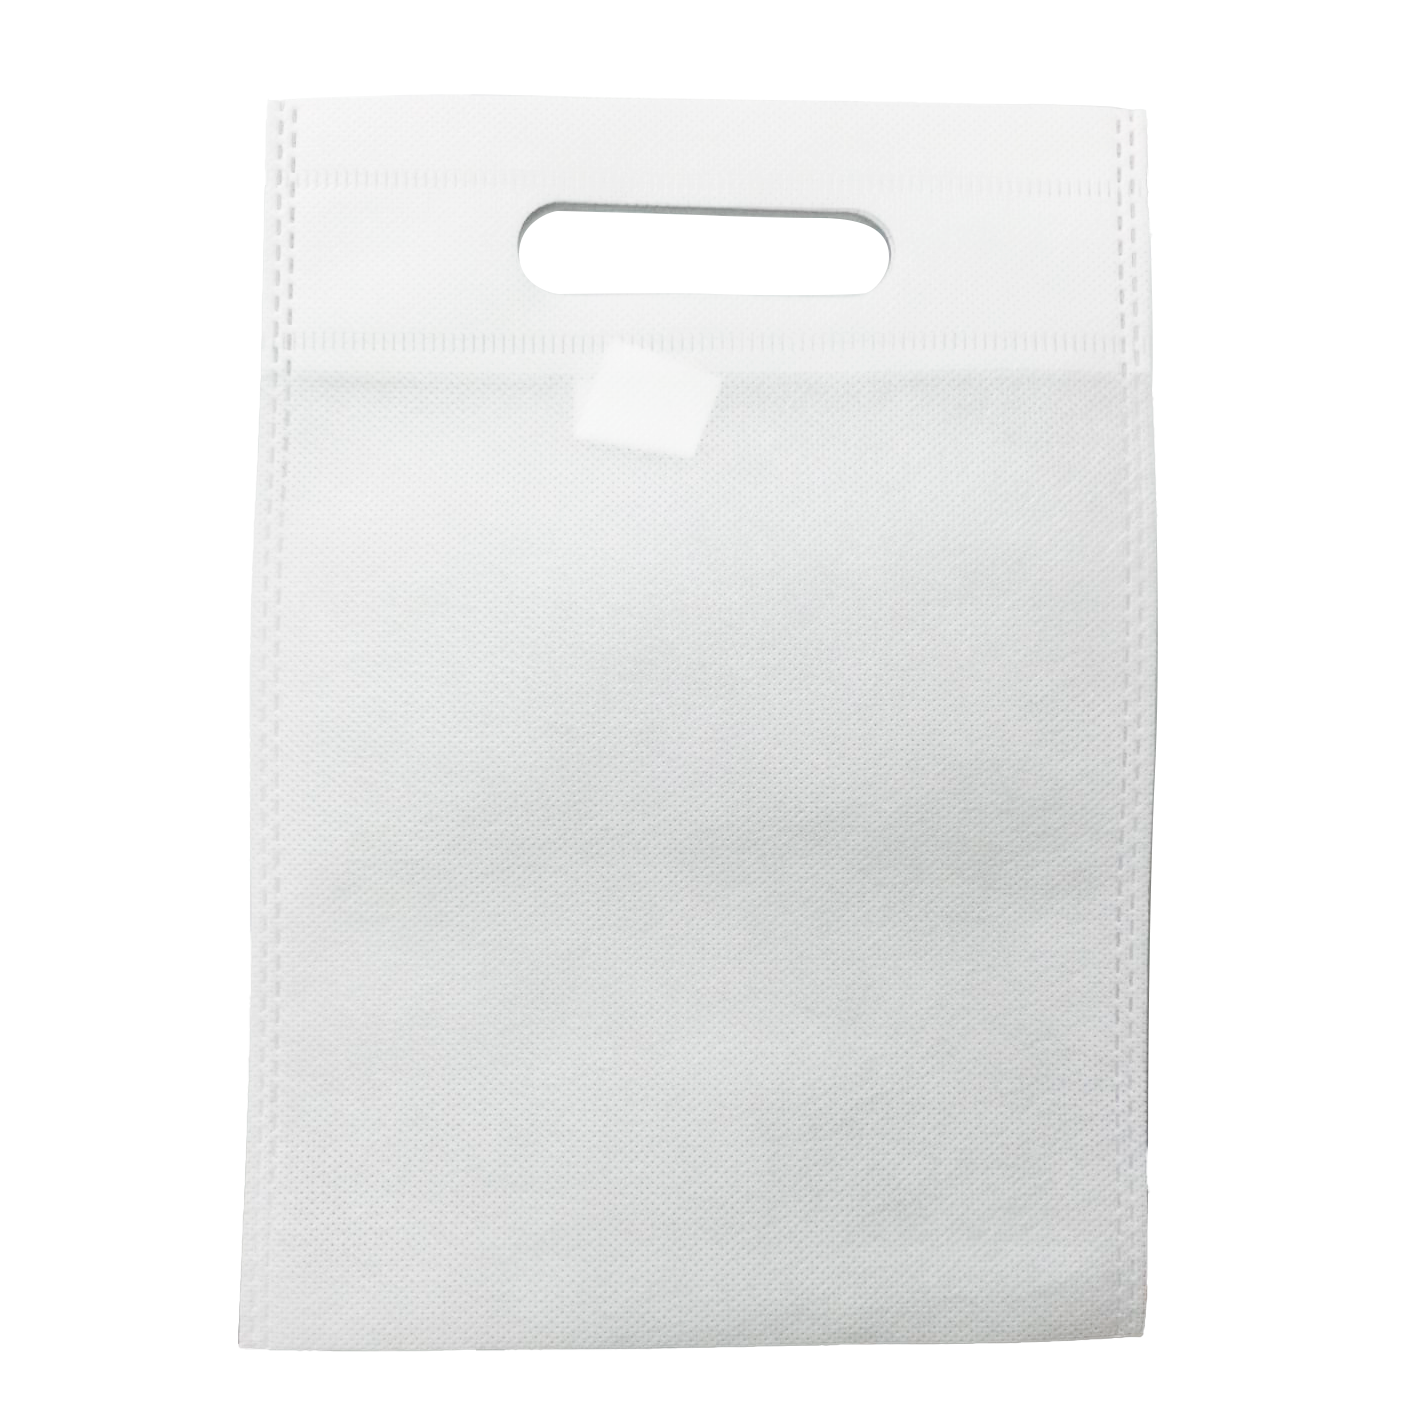 Bolsa Plastico Blanca 35x40 cm troquelada, 100 ud 8,90 € envío en